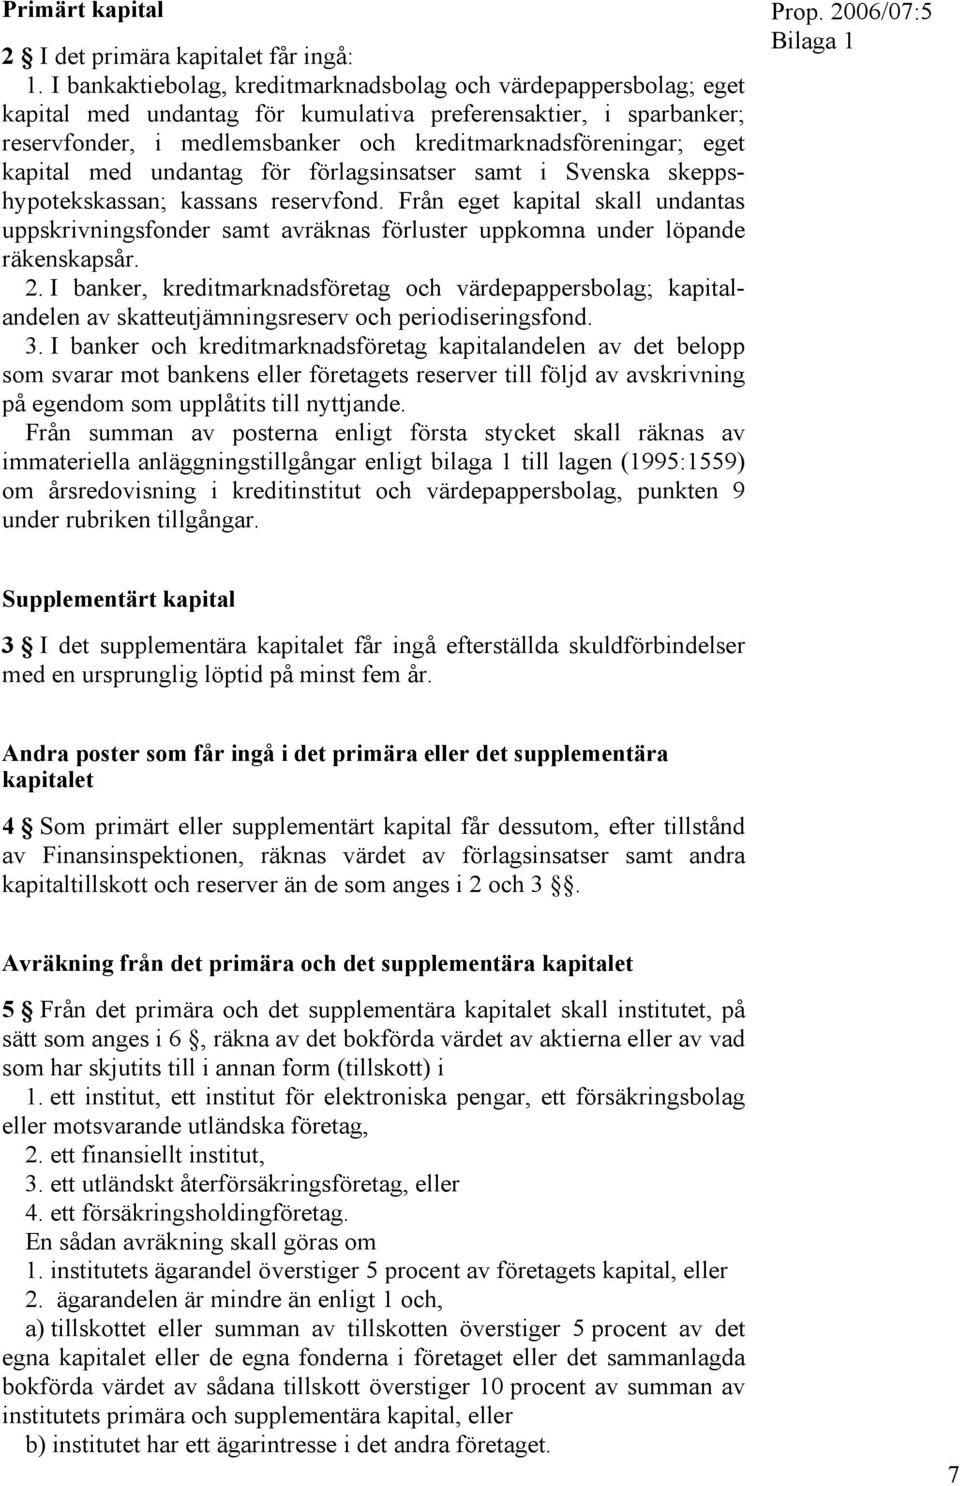 kapital med undantag för förlagsinsatser samt i Svenska skeppshypotekskassan; kassans reservfond.